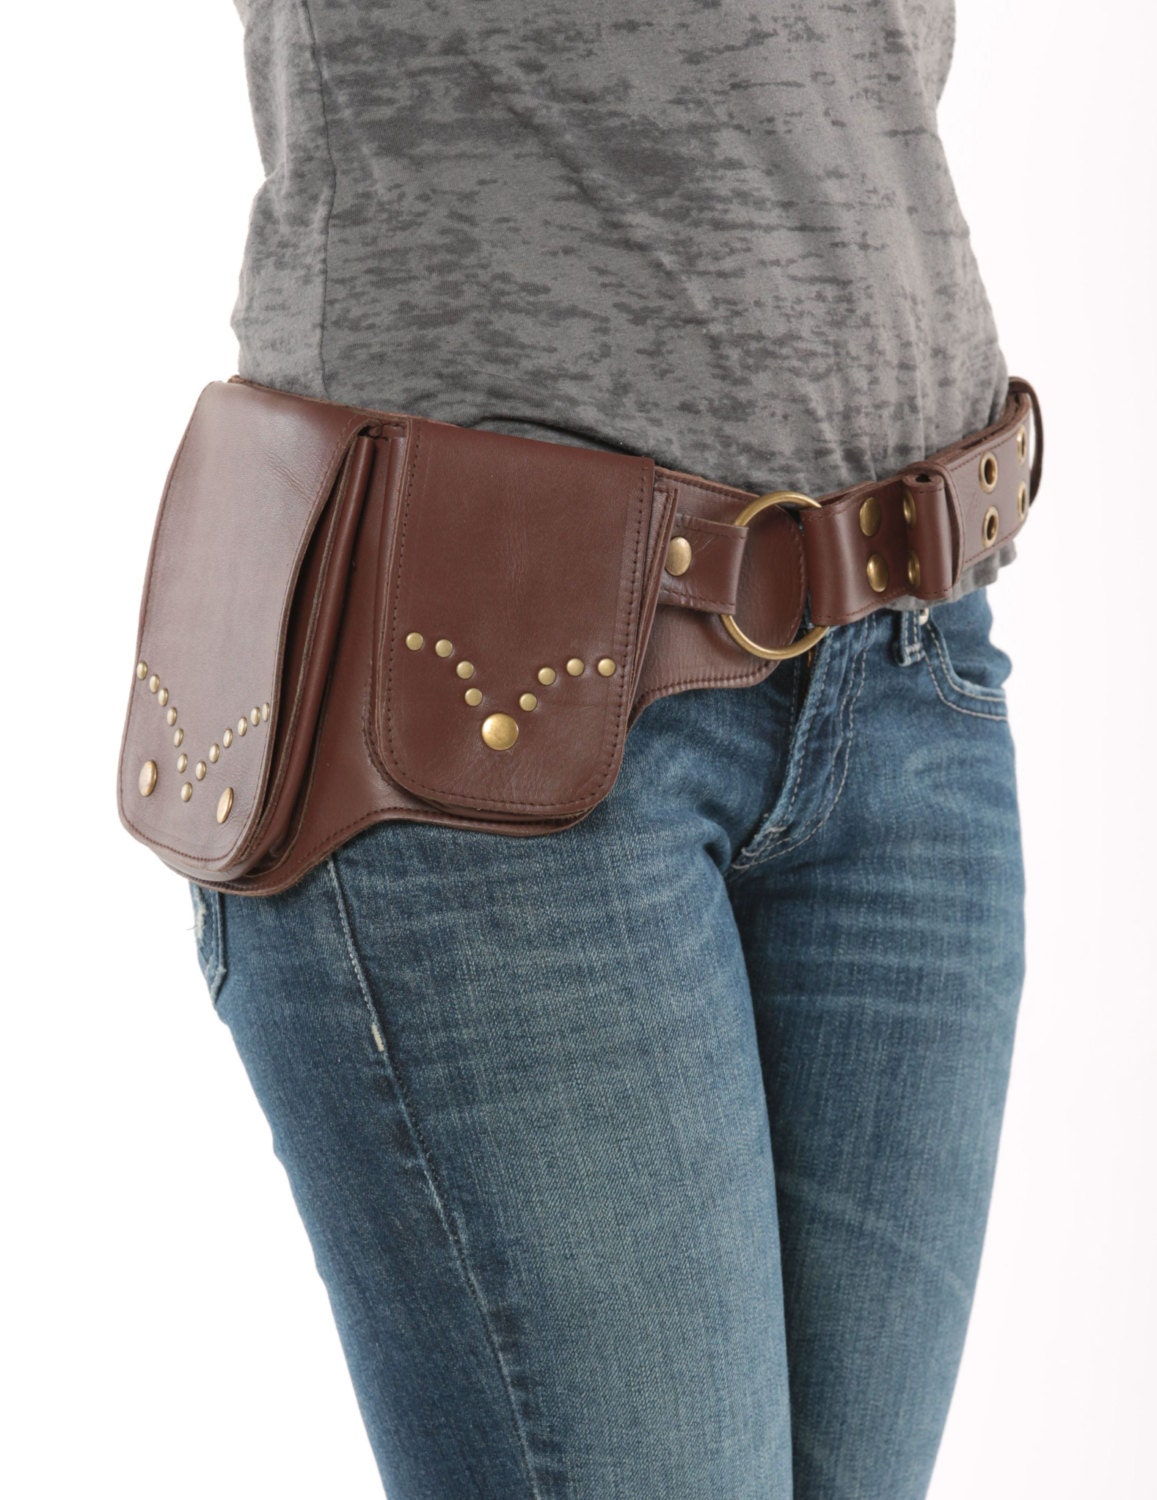 Hip Pack Leather Utility Belt Dark Brown Rivet Design | Etsy